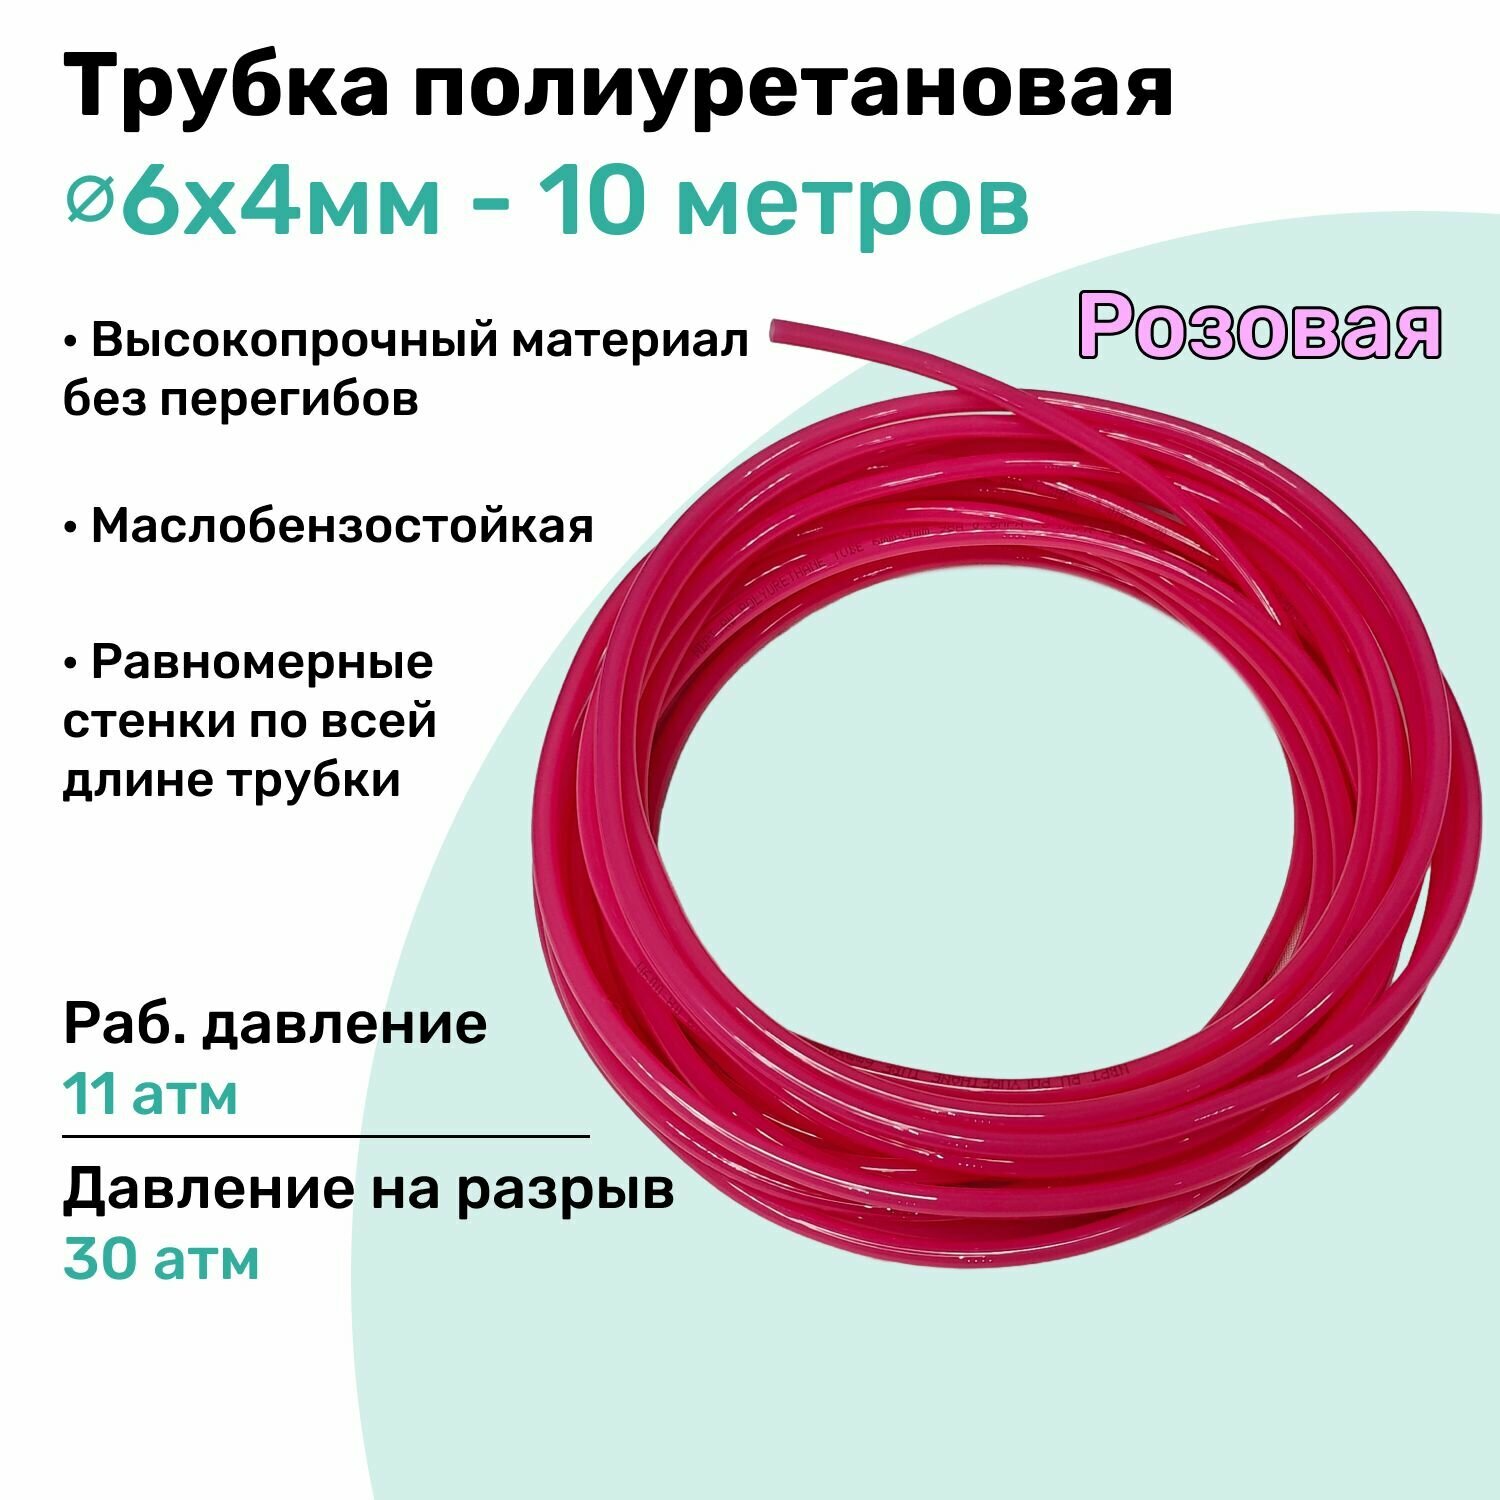 Трубка пневматическая полиуретановая 6х4мм - 200м маслобензостойкая воздушная Пневмошланг NBPT Розовая